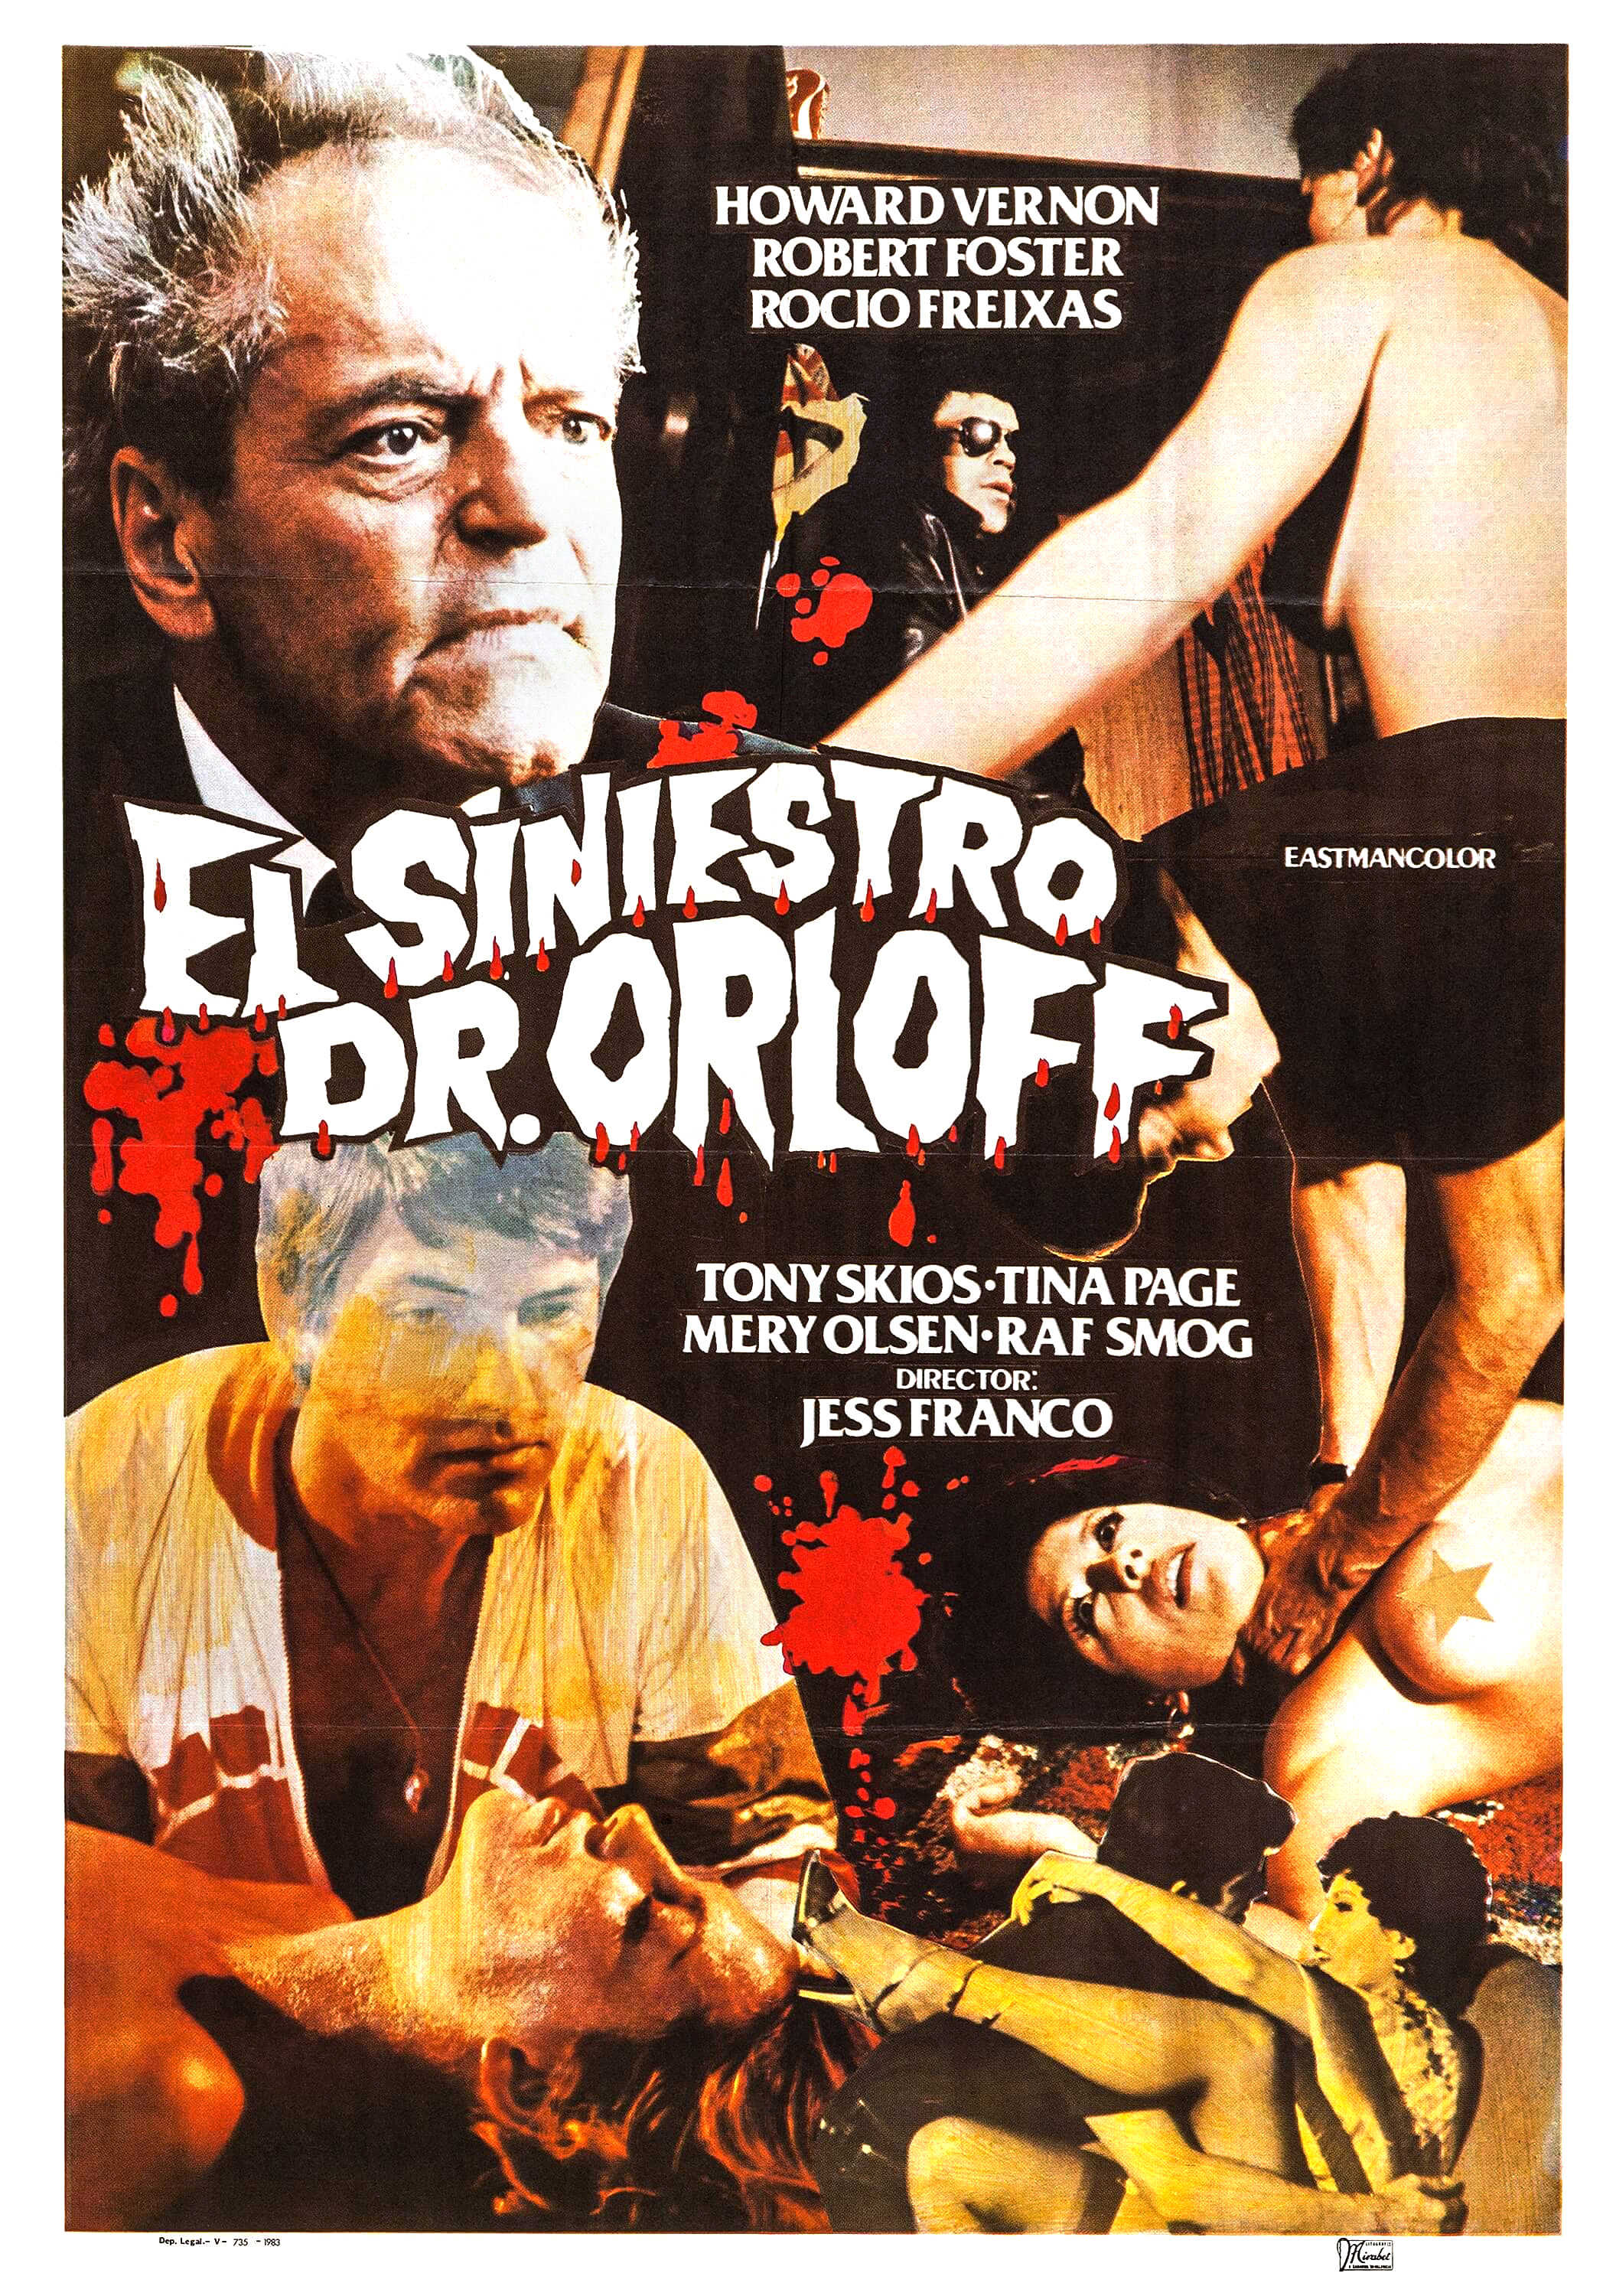 El siniestro doctor Orloff (1984) Screenshot 1 